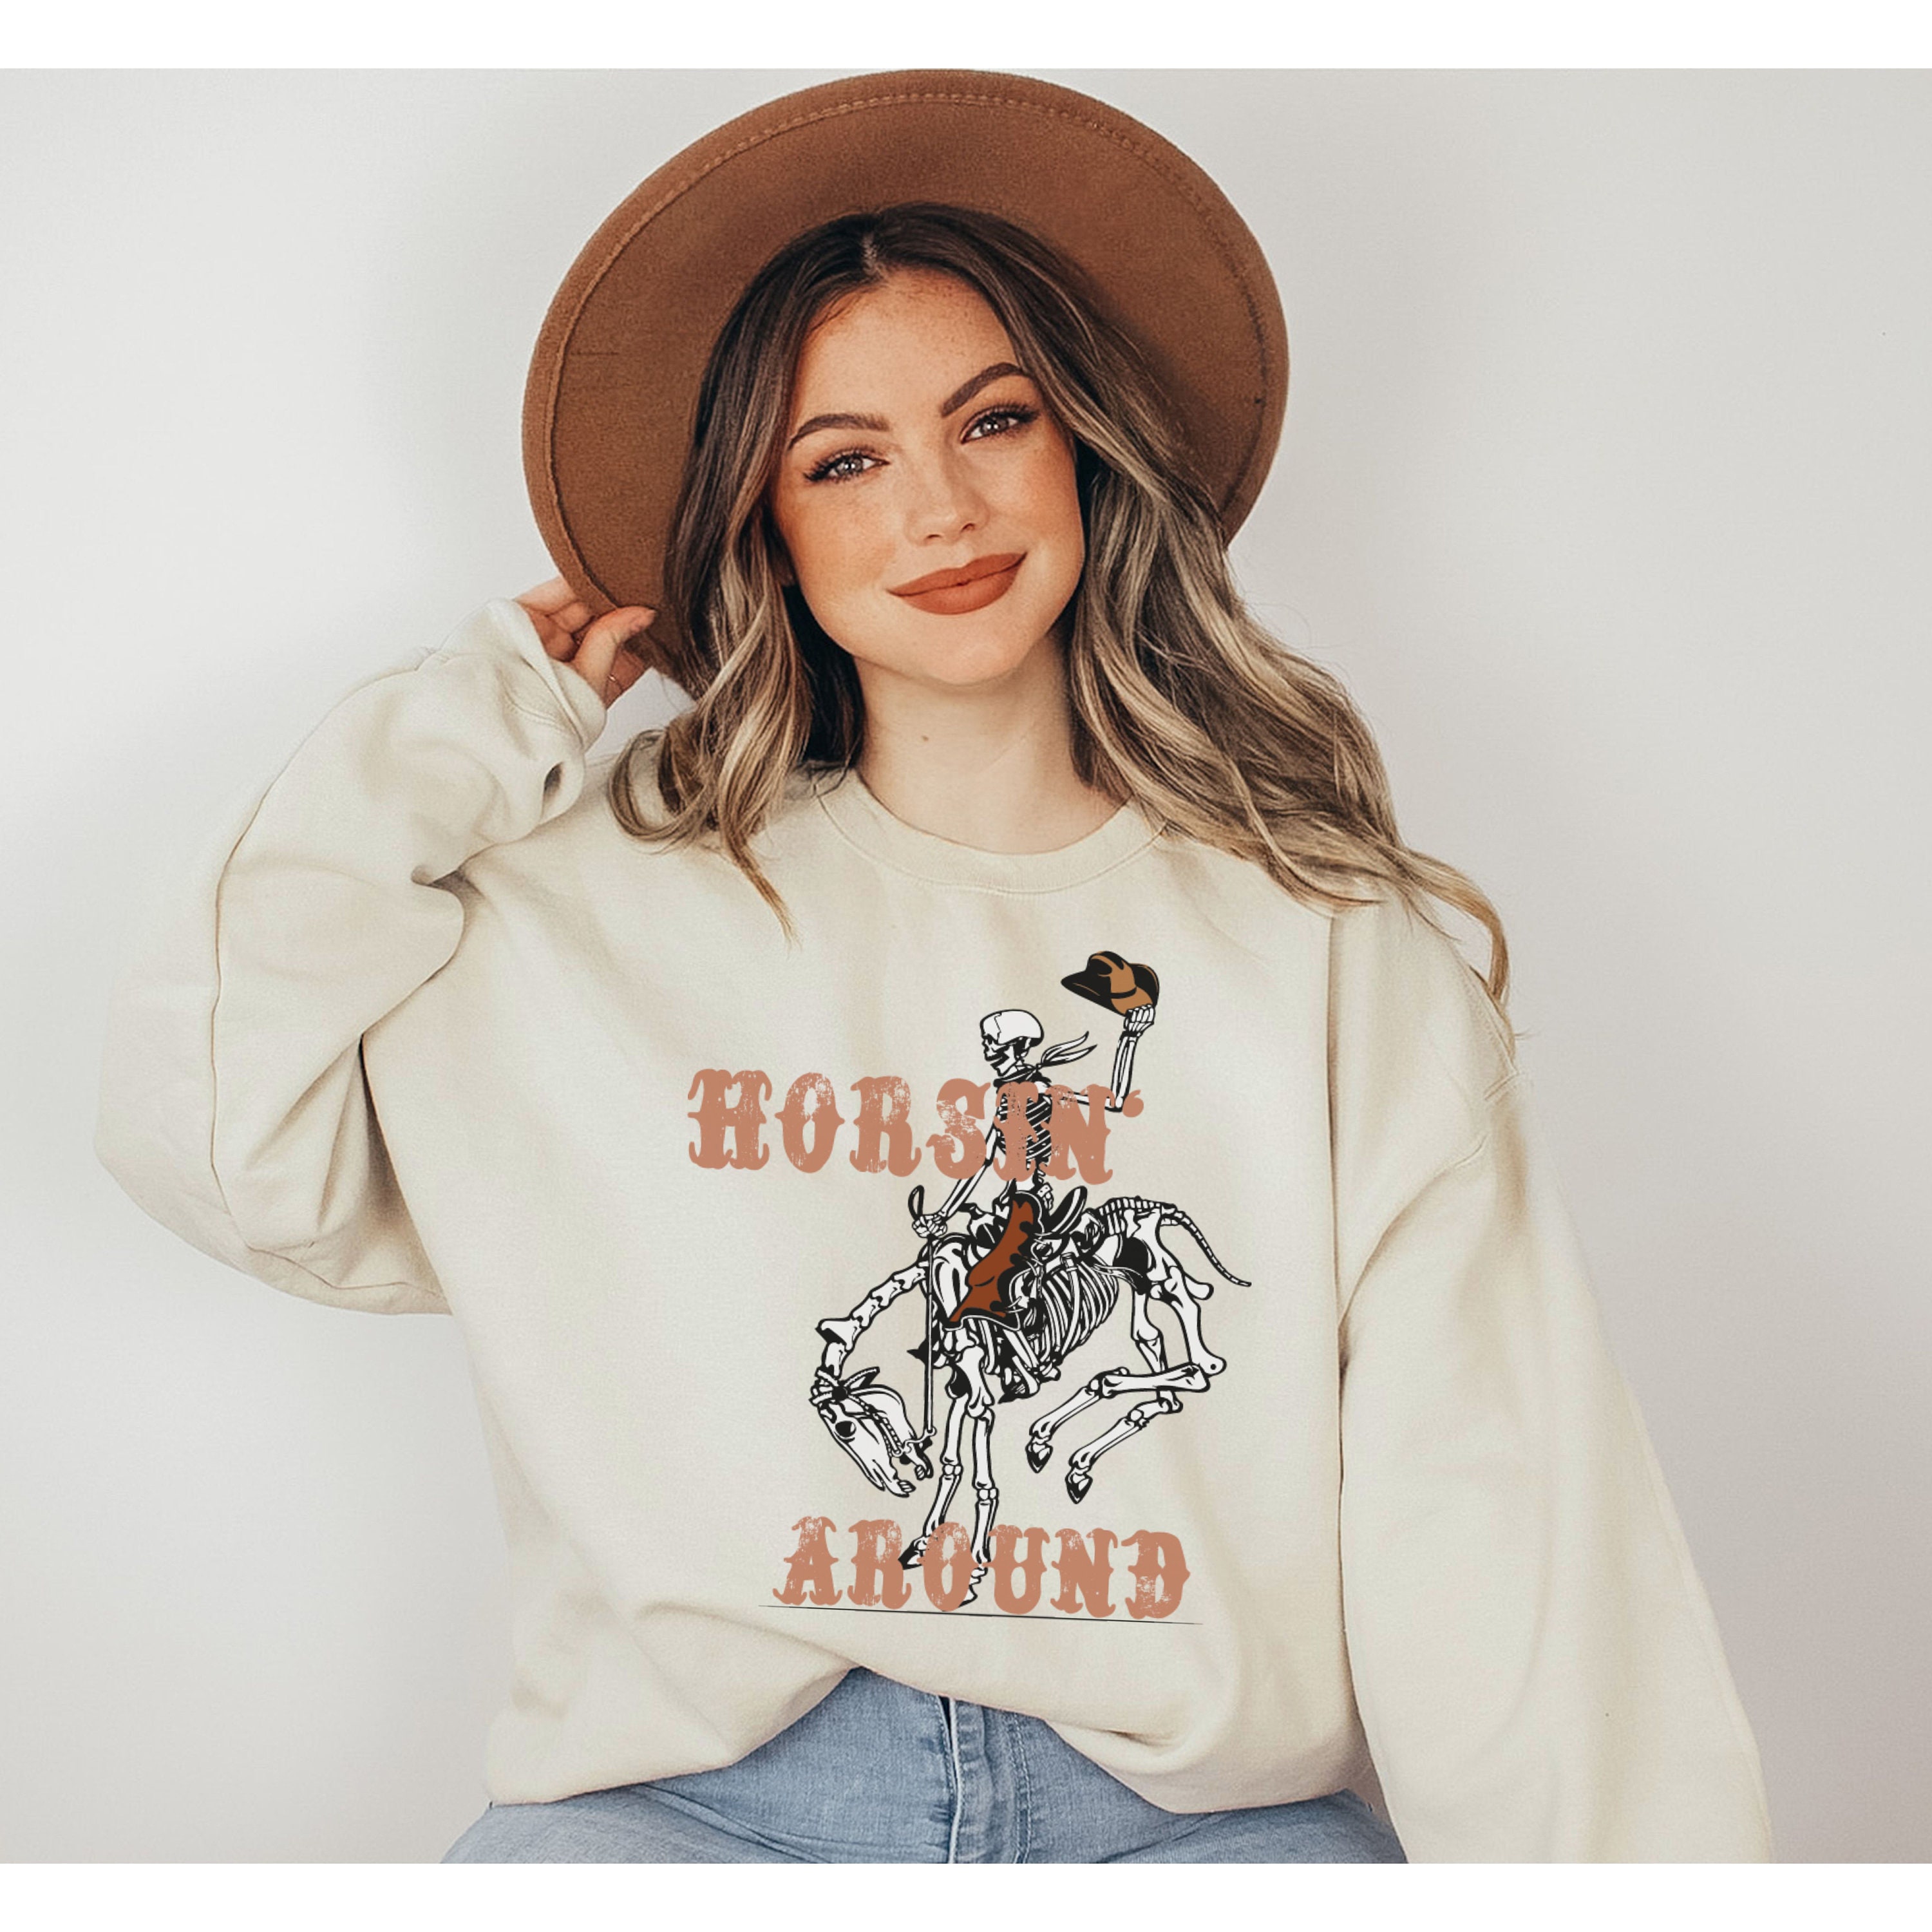 It’s Fall Y’all Cowgirl Sweatshirt Kleding Dameskleding Hoodies & Sweatshirts Sweatshirts 